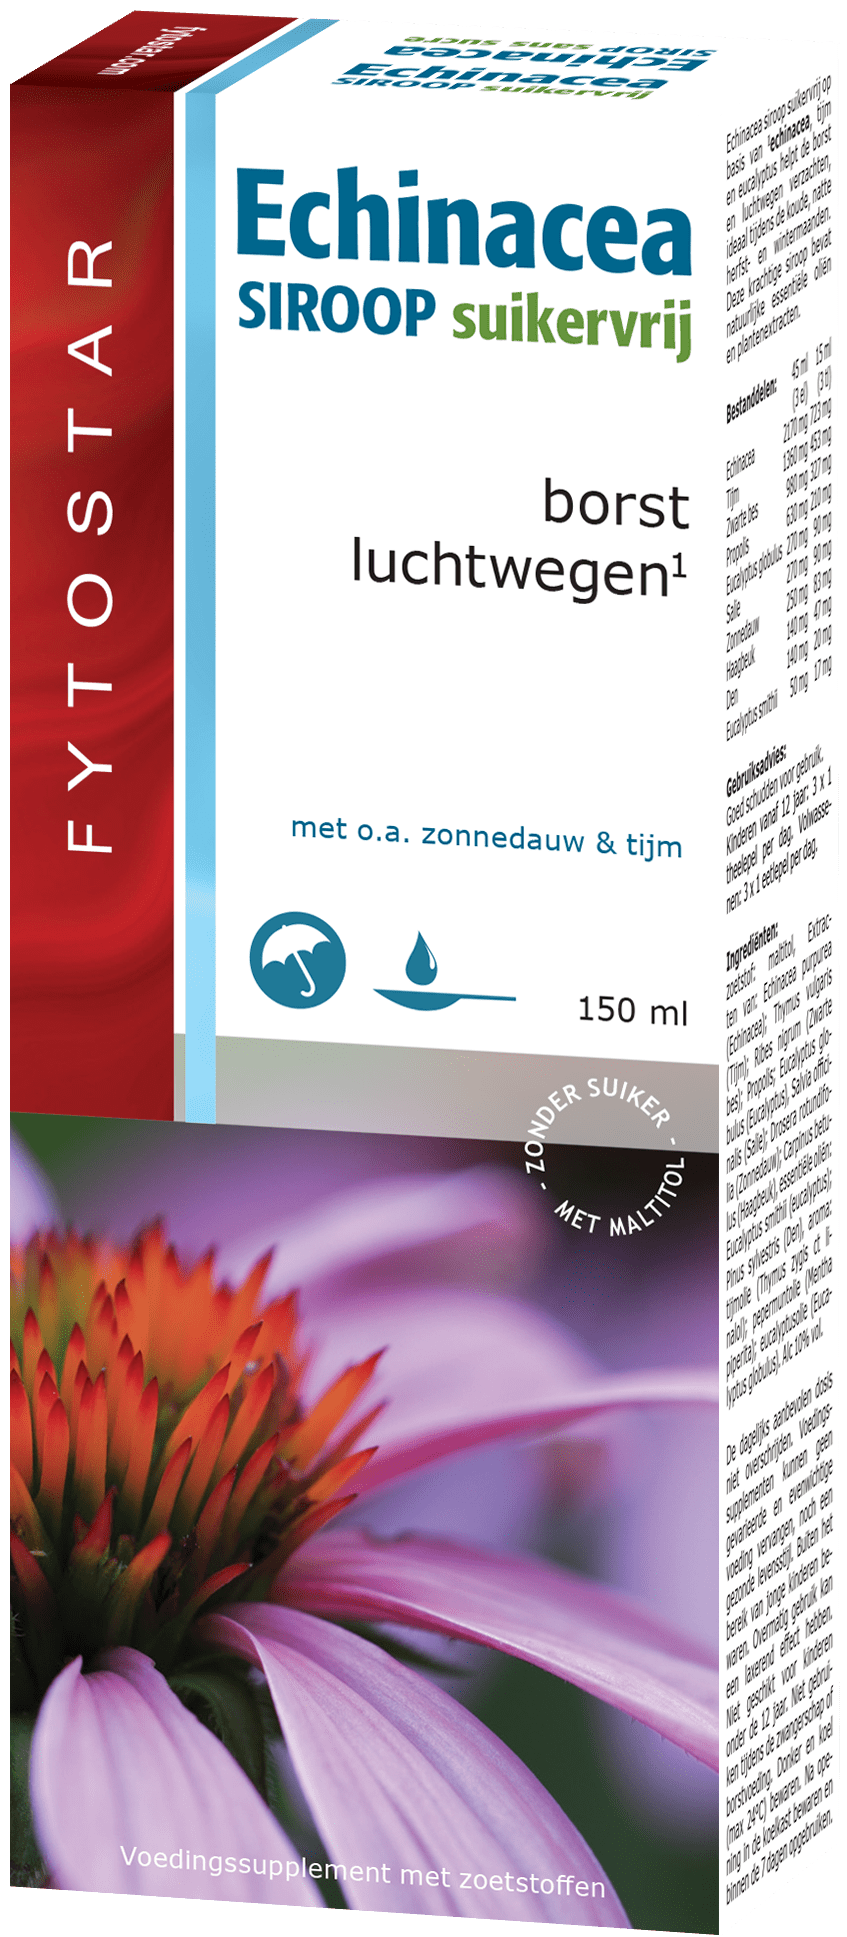 Fytostar Echinacea Siroop Suikervrij